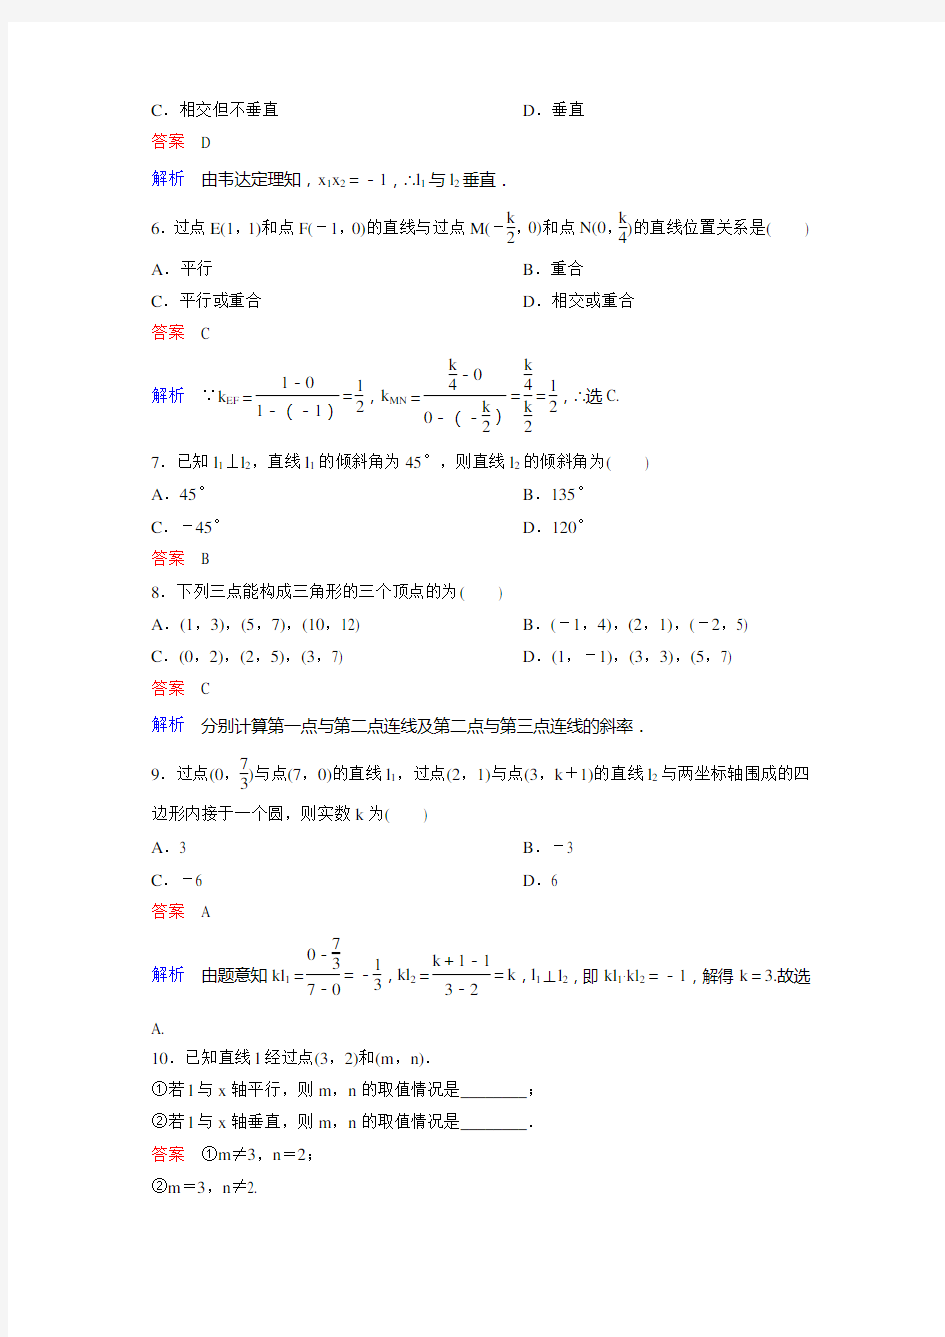 新课标版数学必修二(新高考 新课程)(课件)作业19